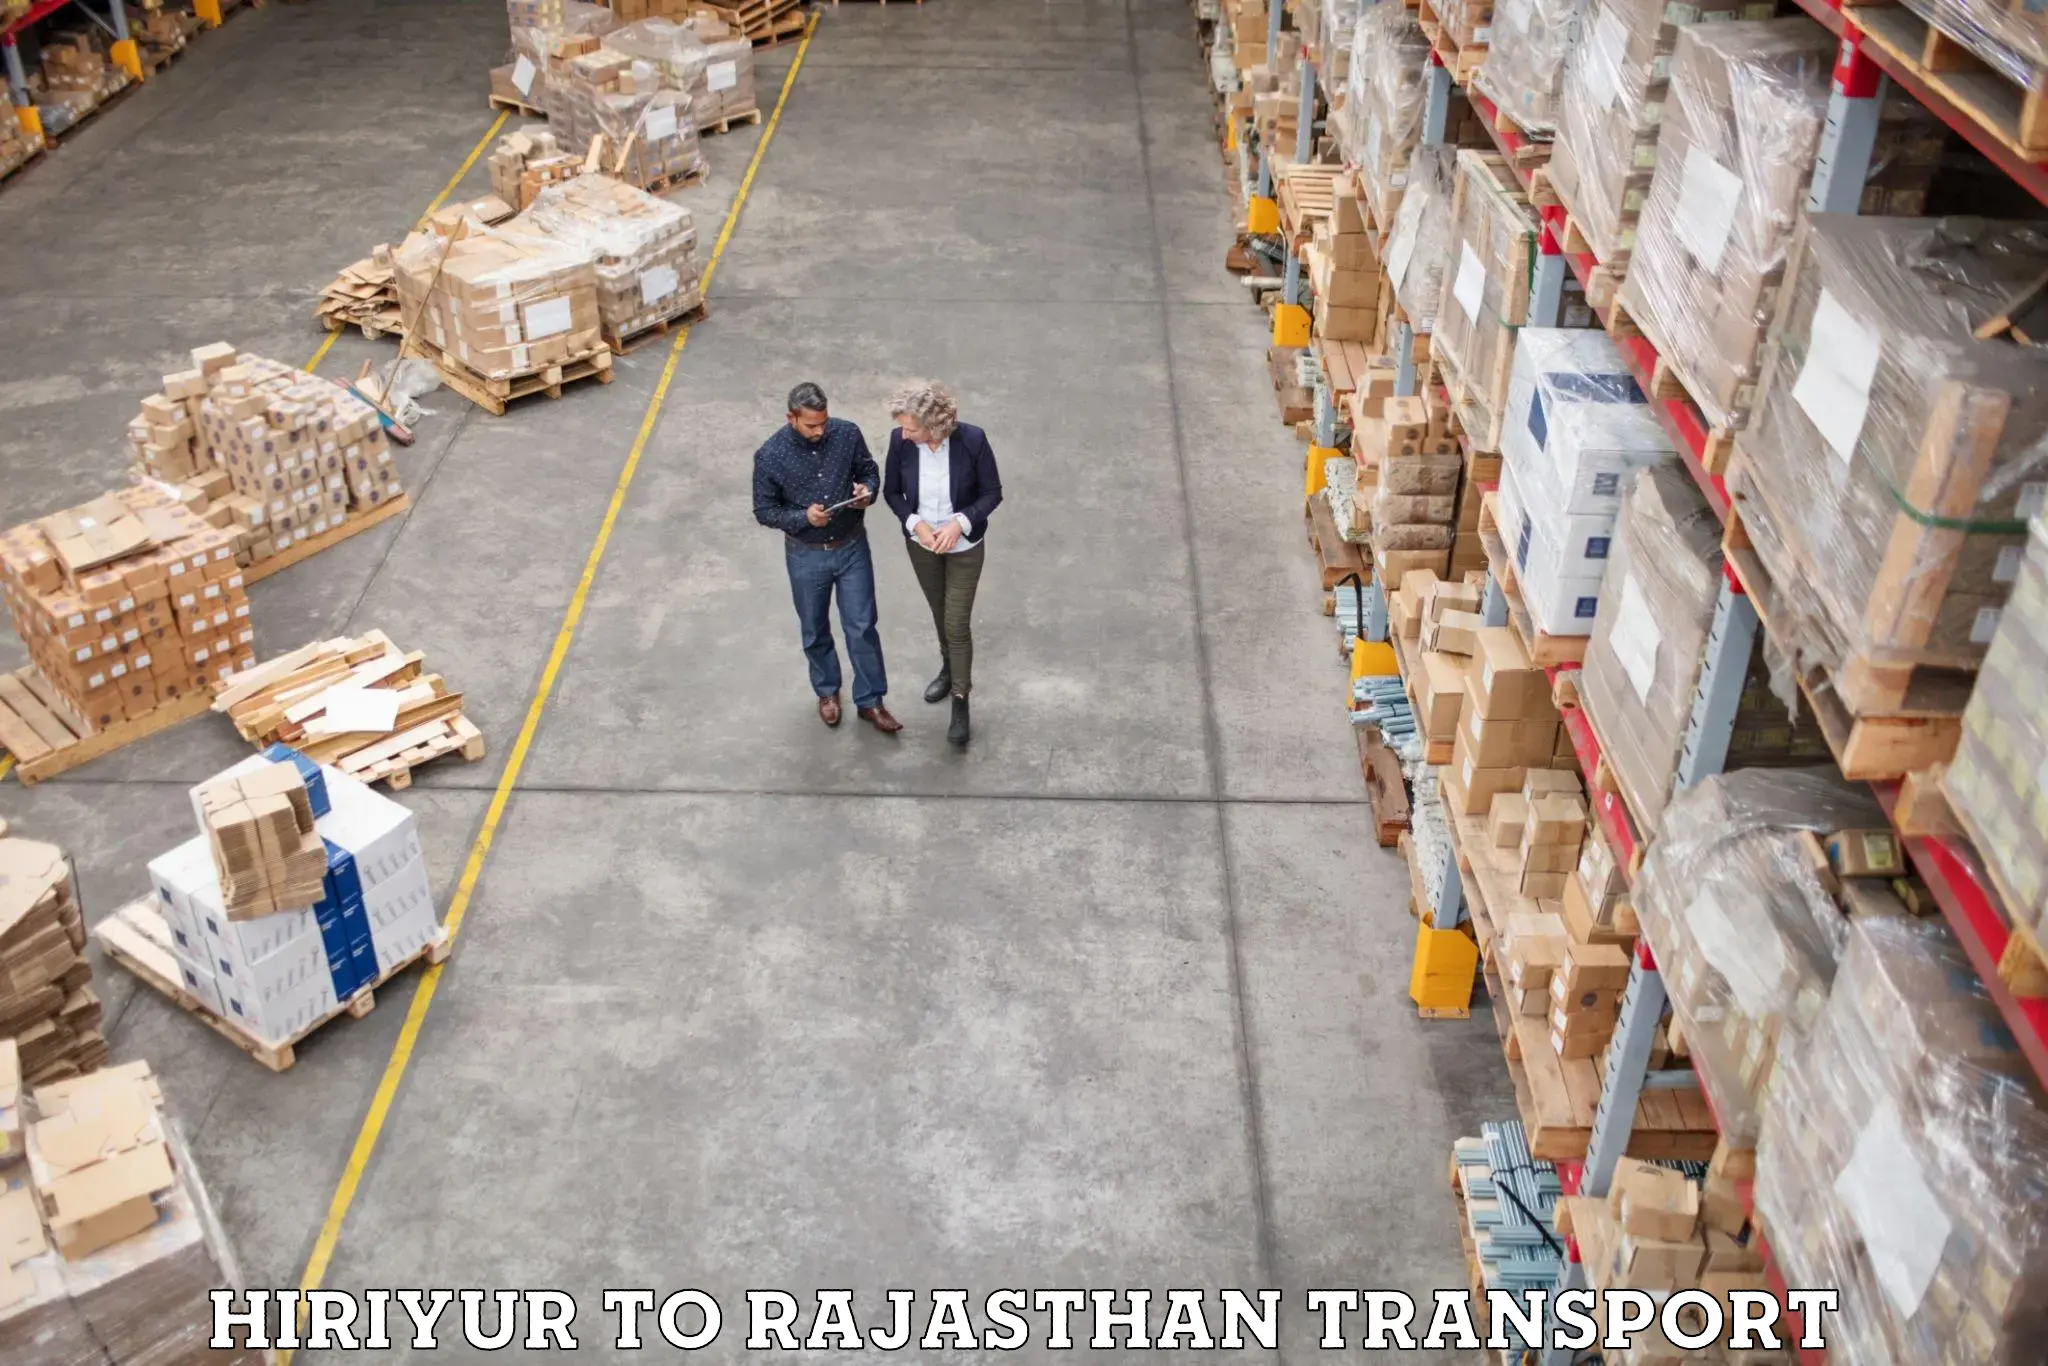 Truck transport companies in India Hiriyur to Kishangarh